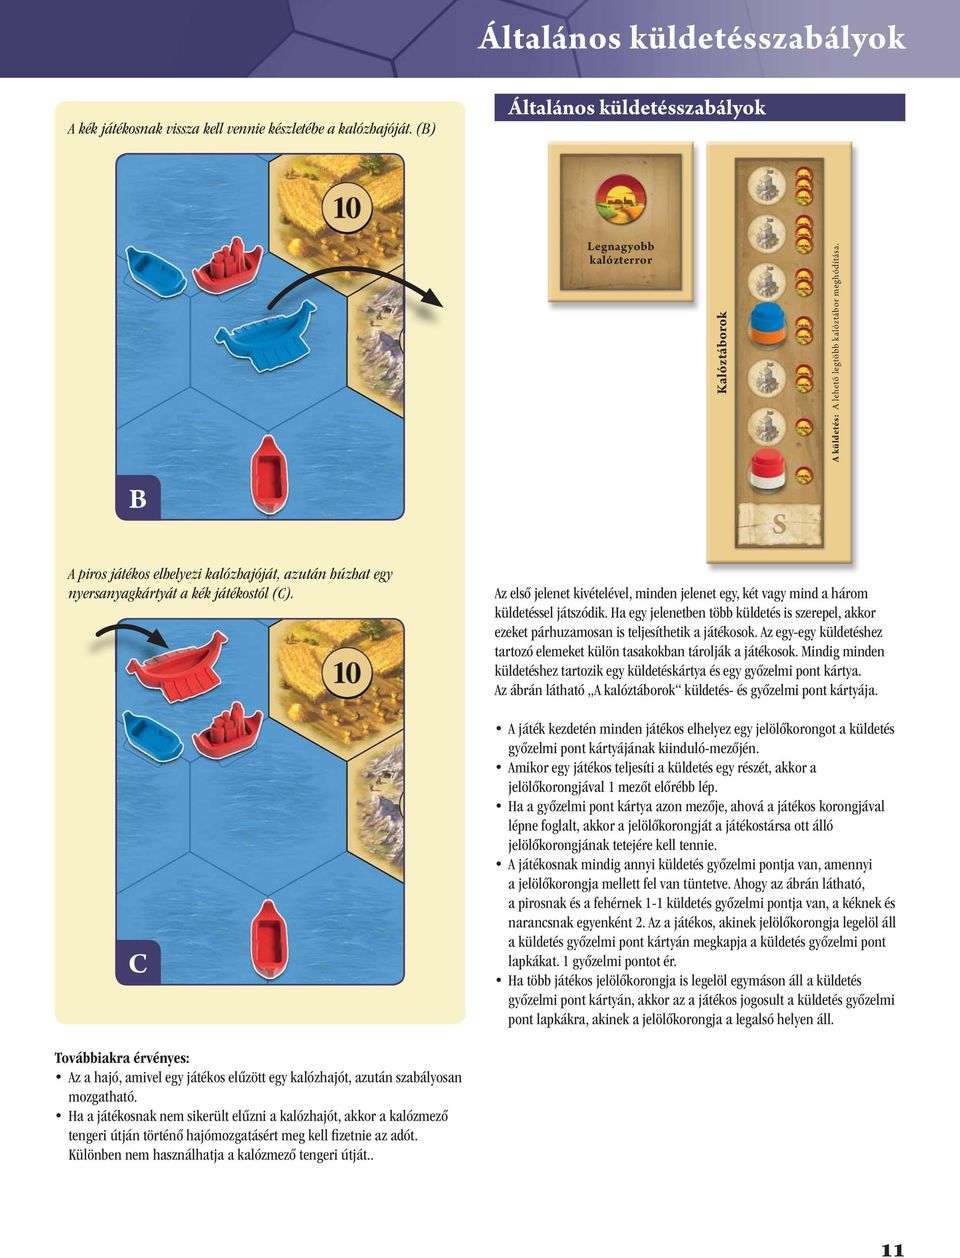 B A piros játékos elhelyezi kalózhajóját, azután húzhat egy nyersanyagkártyát a kék játékostól (C). C Az első jelenet kivételével, minden jelenet egy, két vagy mind a három küldetéssel játszódik.